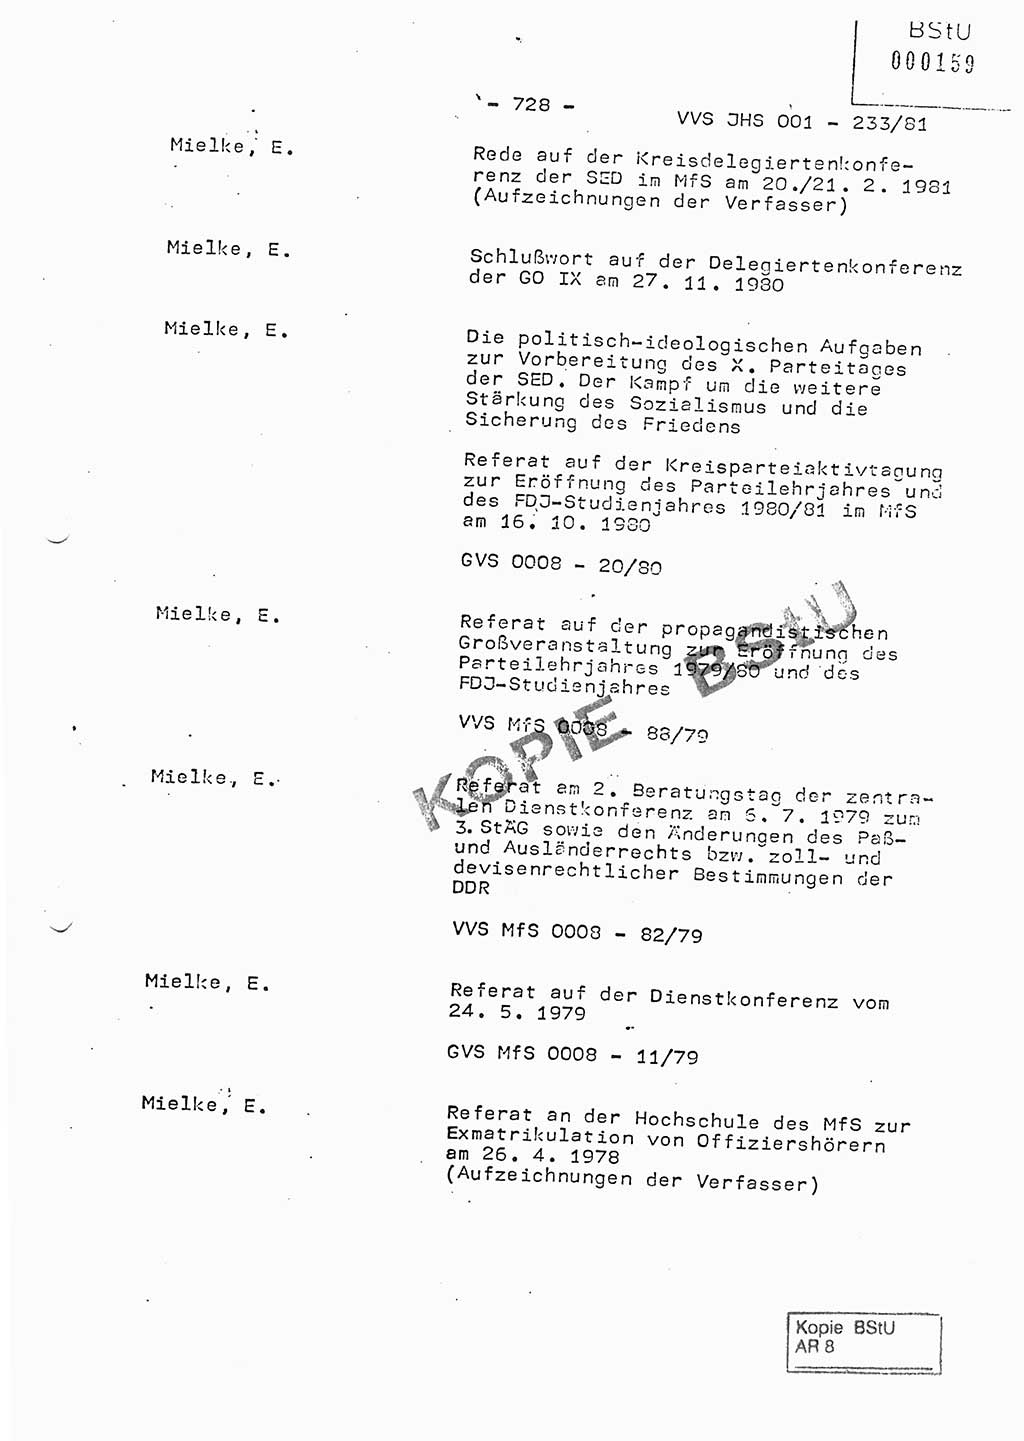 Dissertation Oberstleutnant Horst Zank (JHS), Oberstleutnant Dr. Karl-Heinz Knoblauch (JHS), Oberstleutnant Gustav-Adolf Kowalewski (HA Ⅸ), Oberstleutnant Wolfgang Plötner (HA Ⅸ), Ministerium für Staatssicherheit (MfS) [Deutsche Demokratische Republik (DDR)], Juristische Hochschule (JHS), Vertrauliche Verschlußsache (VVS) o001-233/81, Potsdam 1981, Blatt 728 (Diss. MfS DDR JHS VVS o001-233/81 1981, Bl. 728)